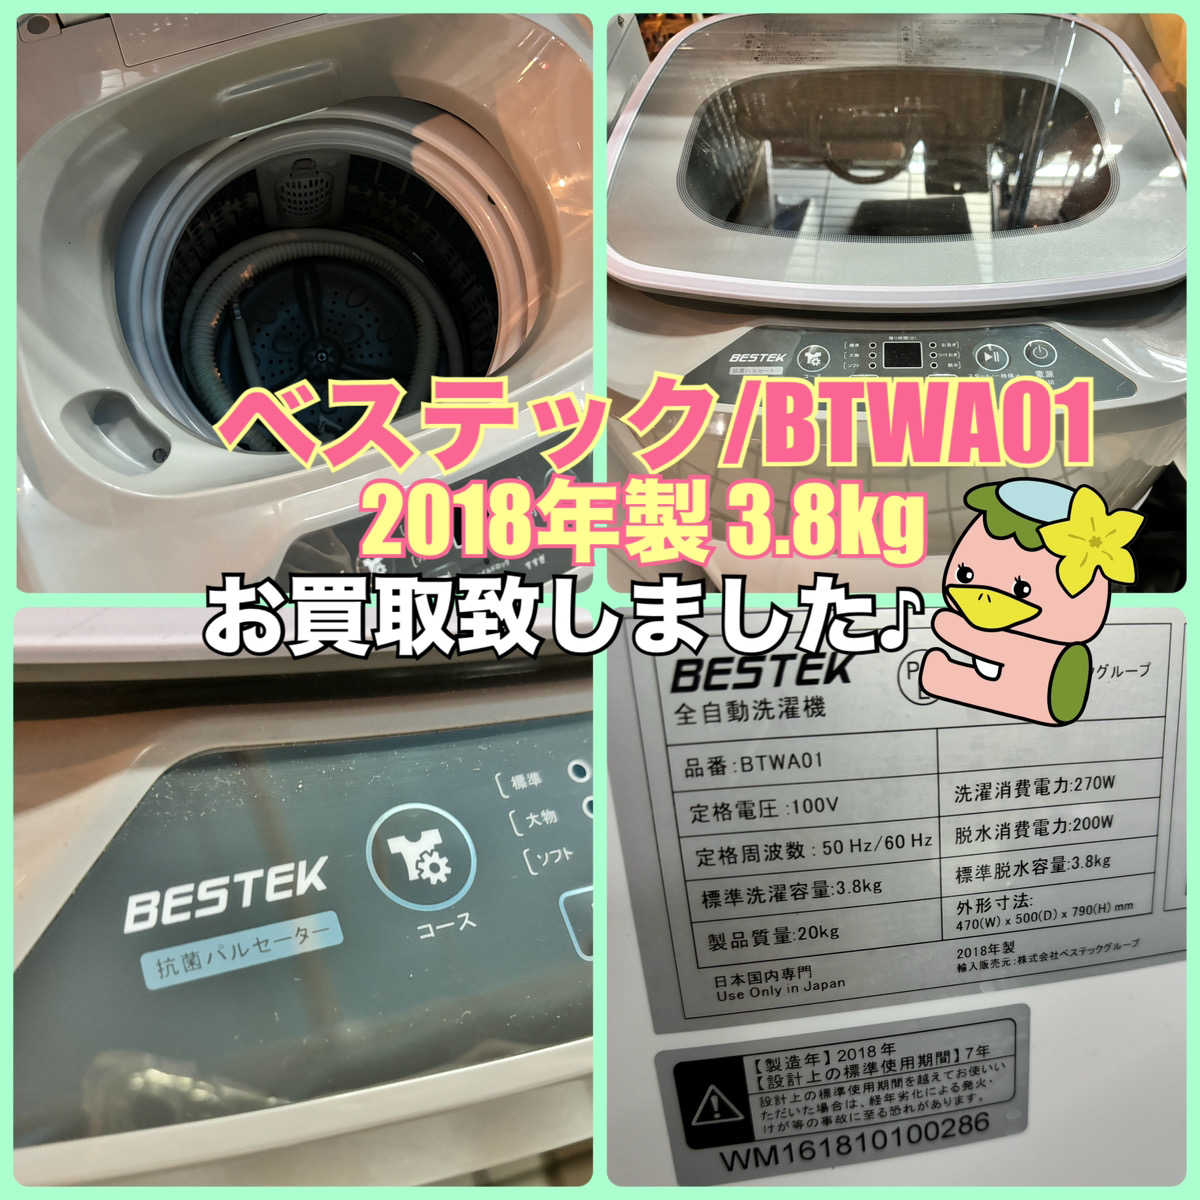 志木市 出張買取 BESTEK/べステック BTWA01 2018年製 3.8kg 小型洗濯機 